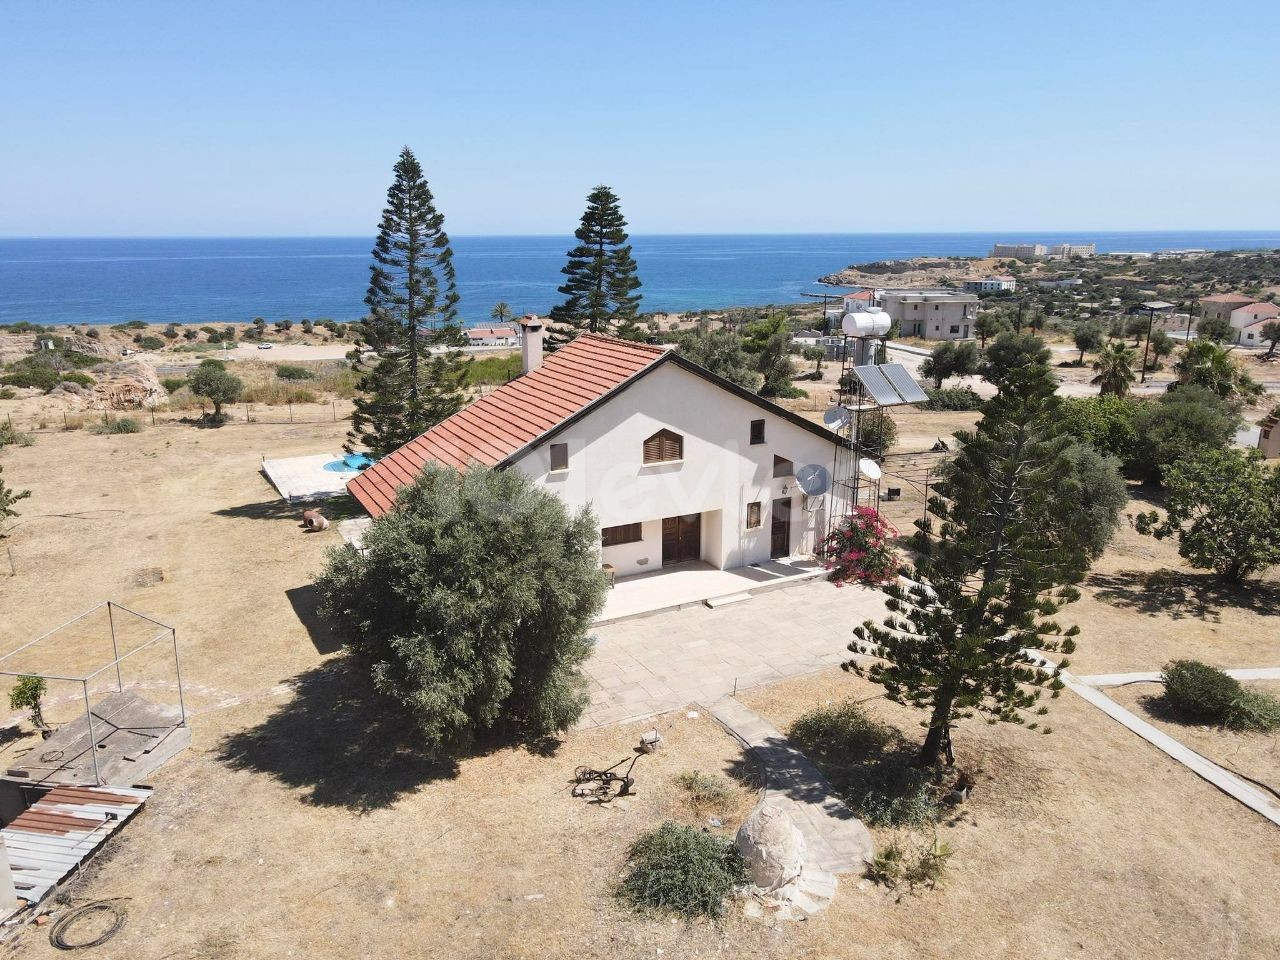 Einzige autorisierte Zypern Kyrenia CHATALKÖY de FUL KESMEZ 6931 m2 Grundstück mit Meerblick 4 + 1 sehr privates Bauernhaus ** 